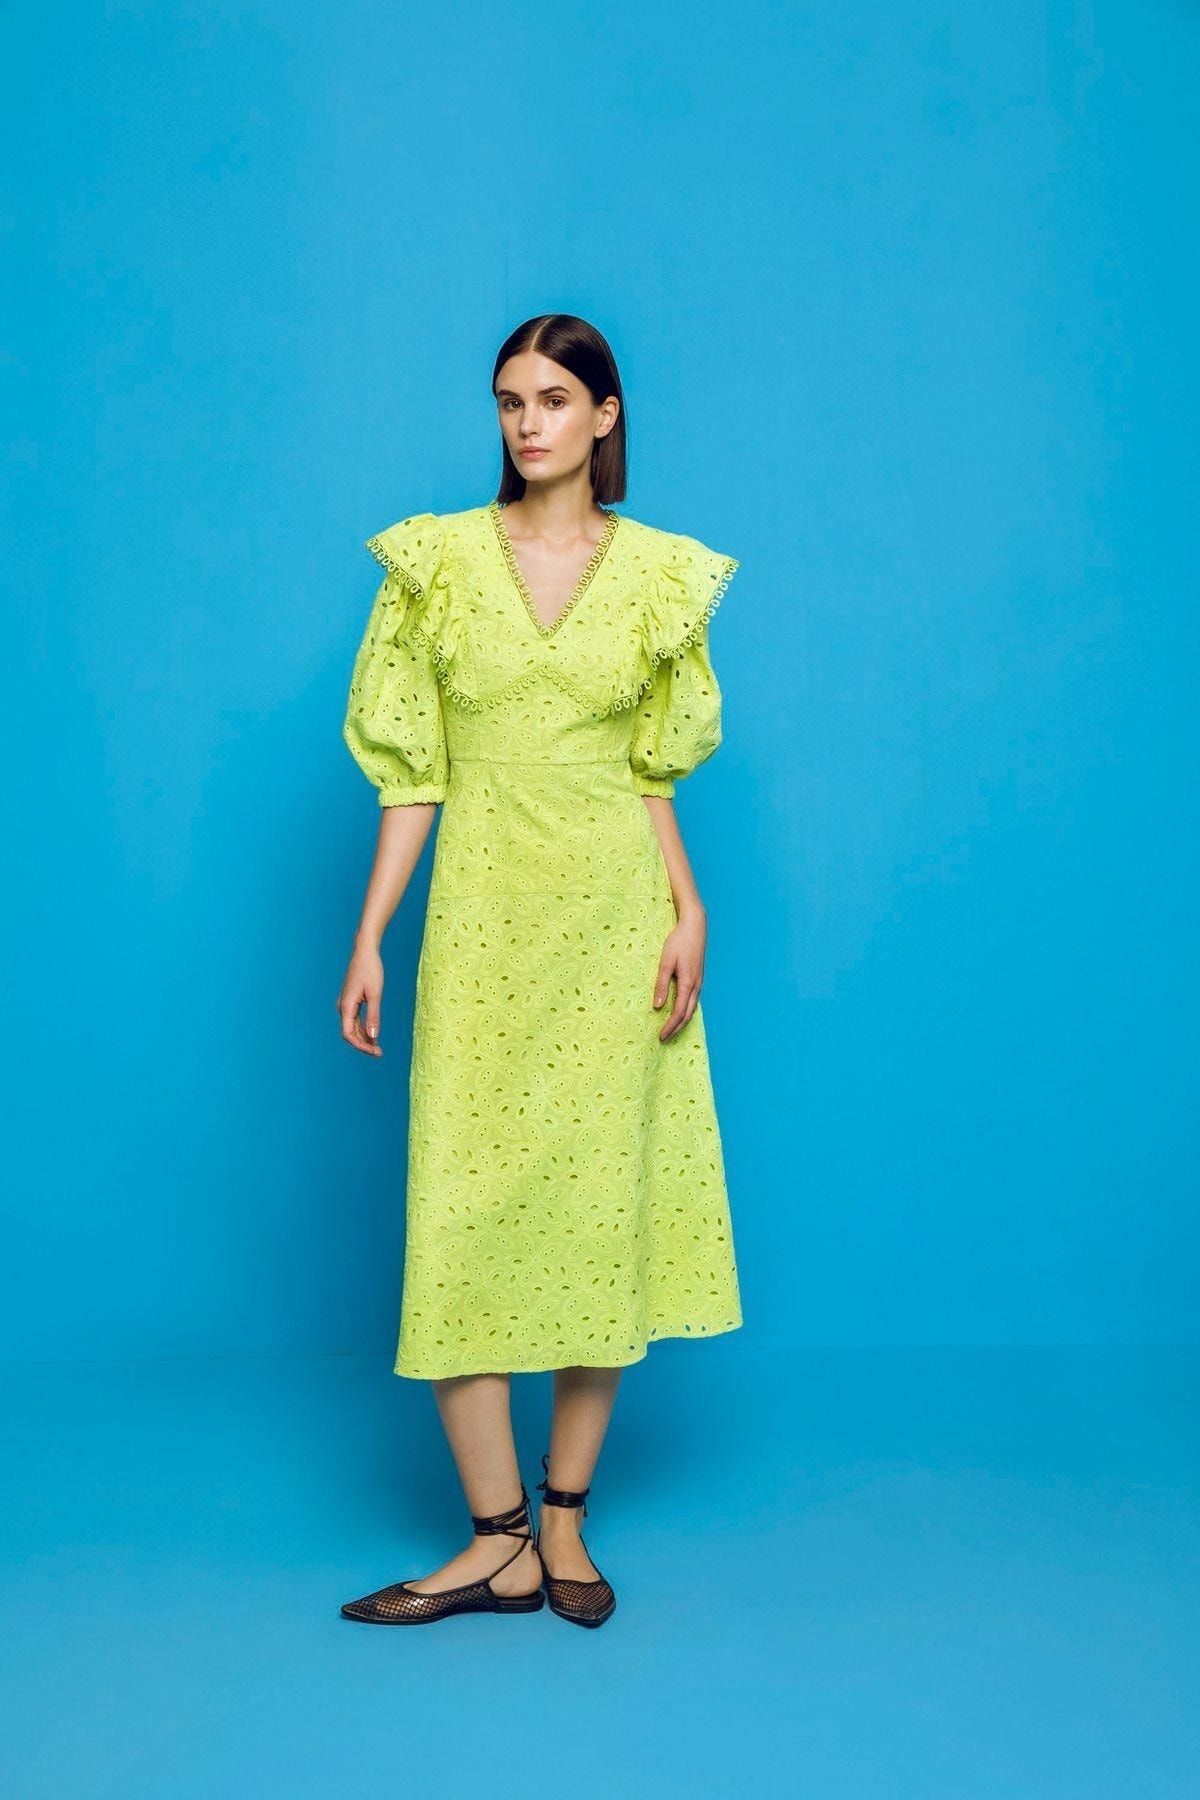 KAMEYA - Elbise Fıstık Yeşili